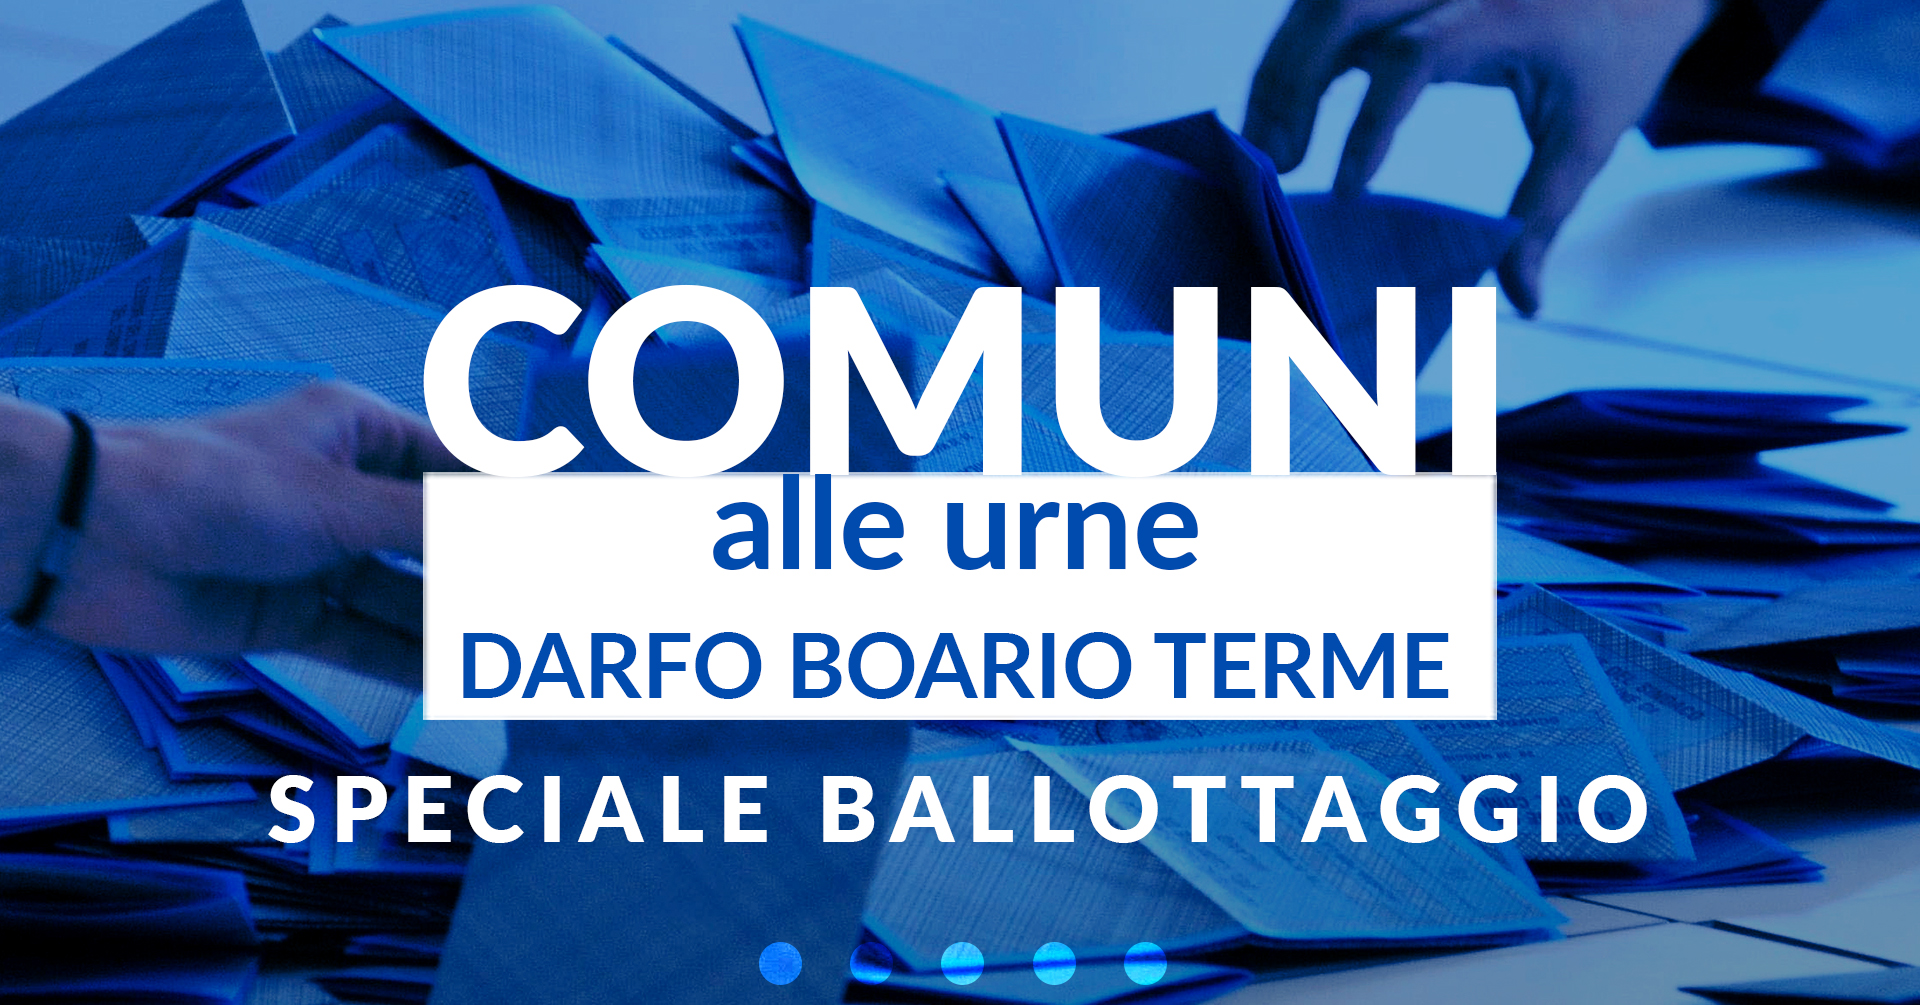 Comuni alle urne - Darfo Boario Terme - Speciale ballottaggio